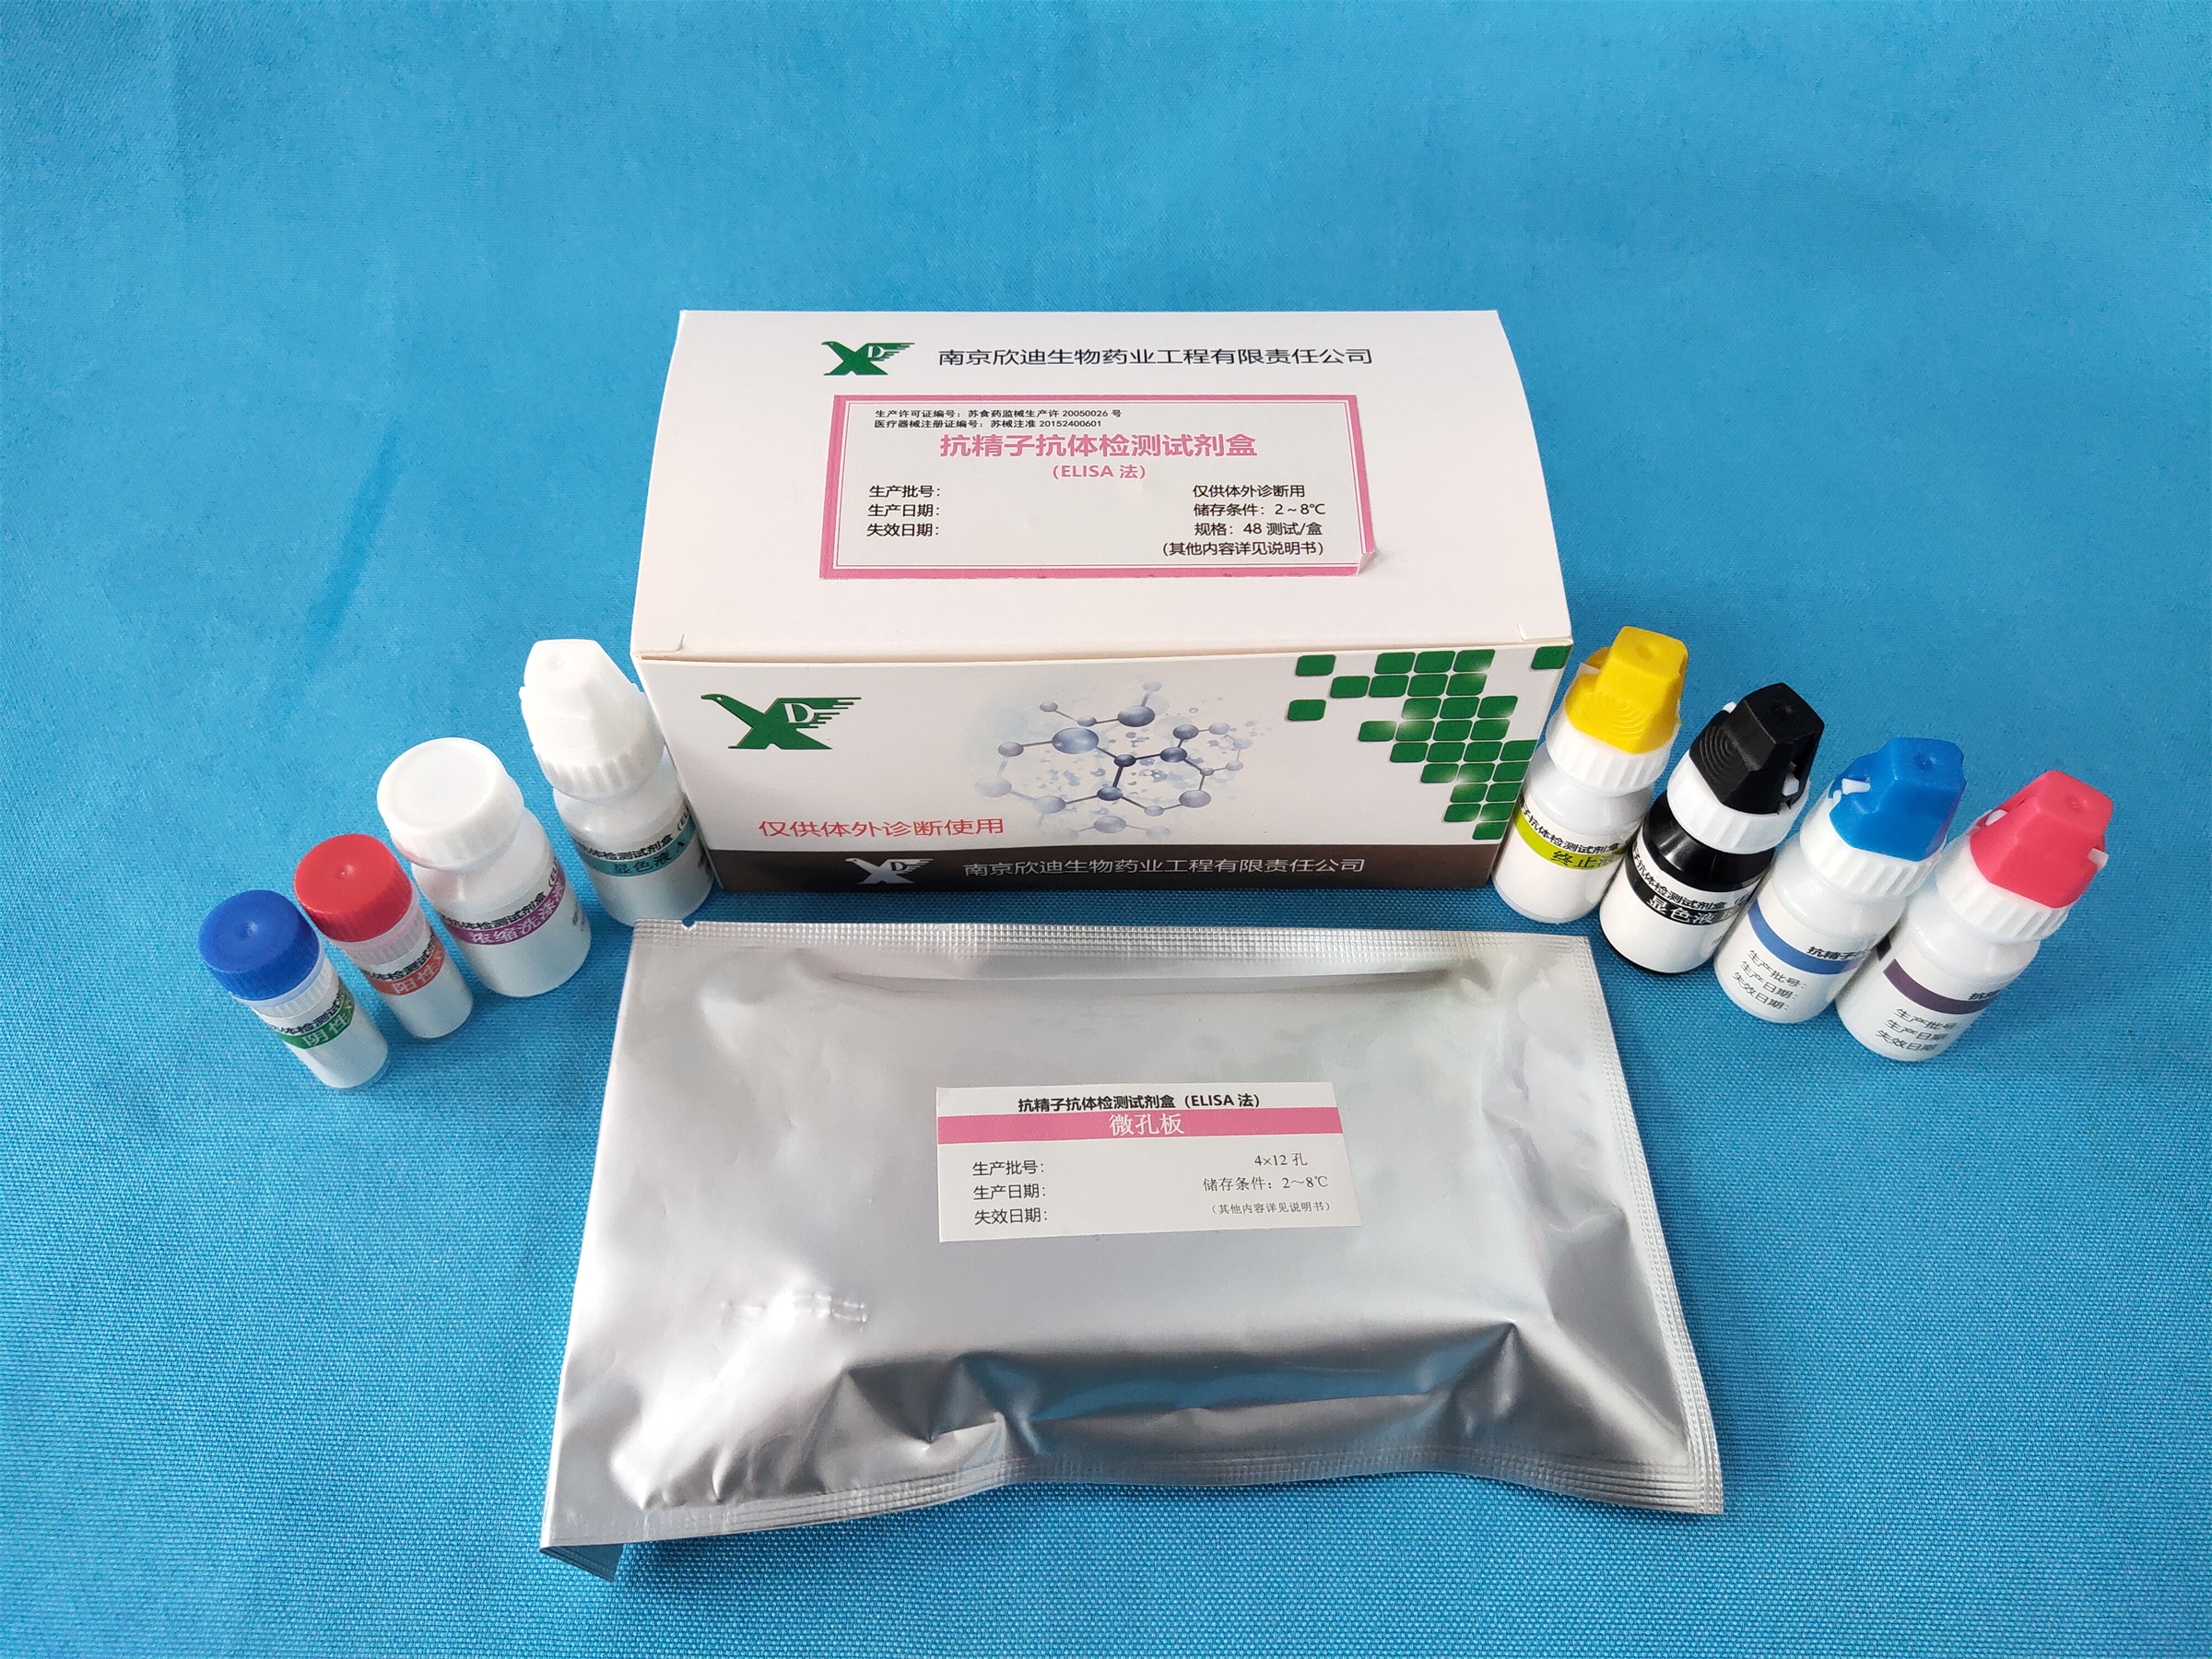 【欣迪】抗精子抗体检测试剂盒(ELISA法